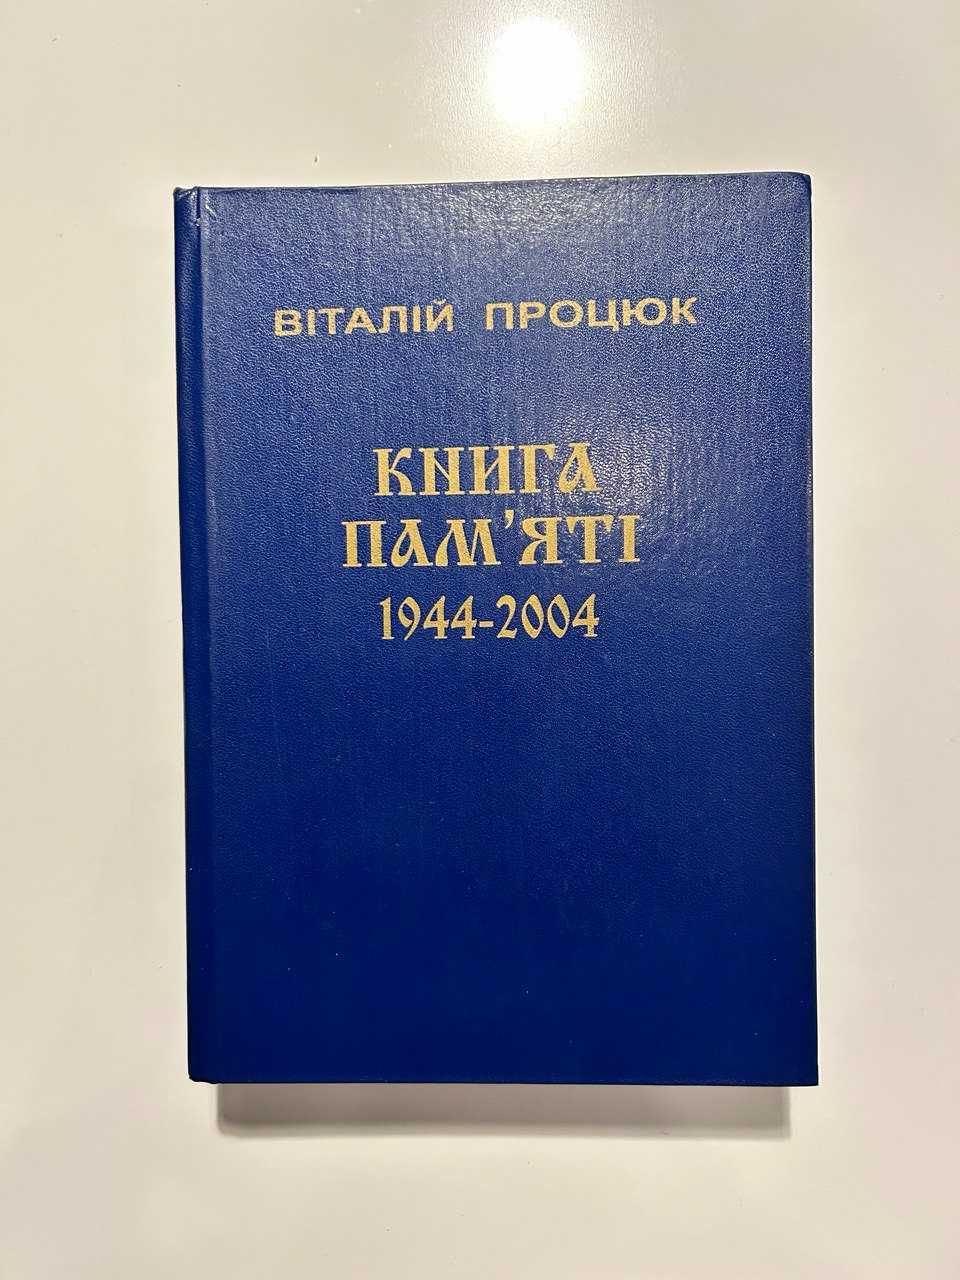 Книга пам"яті (1944-2004), Віталій Процюк